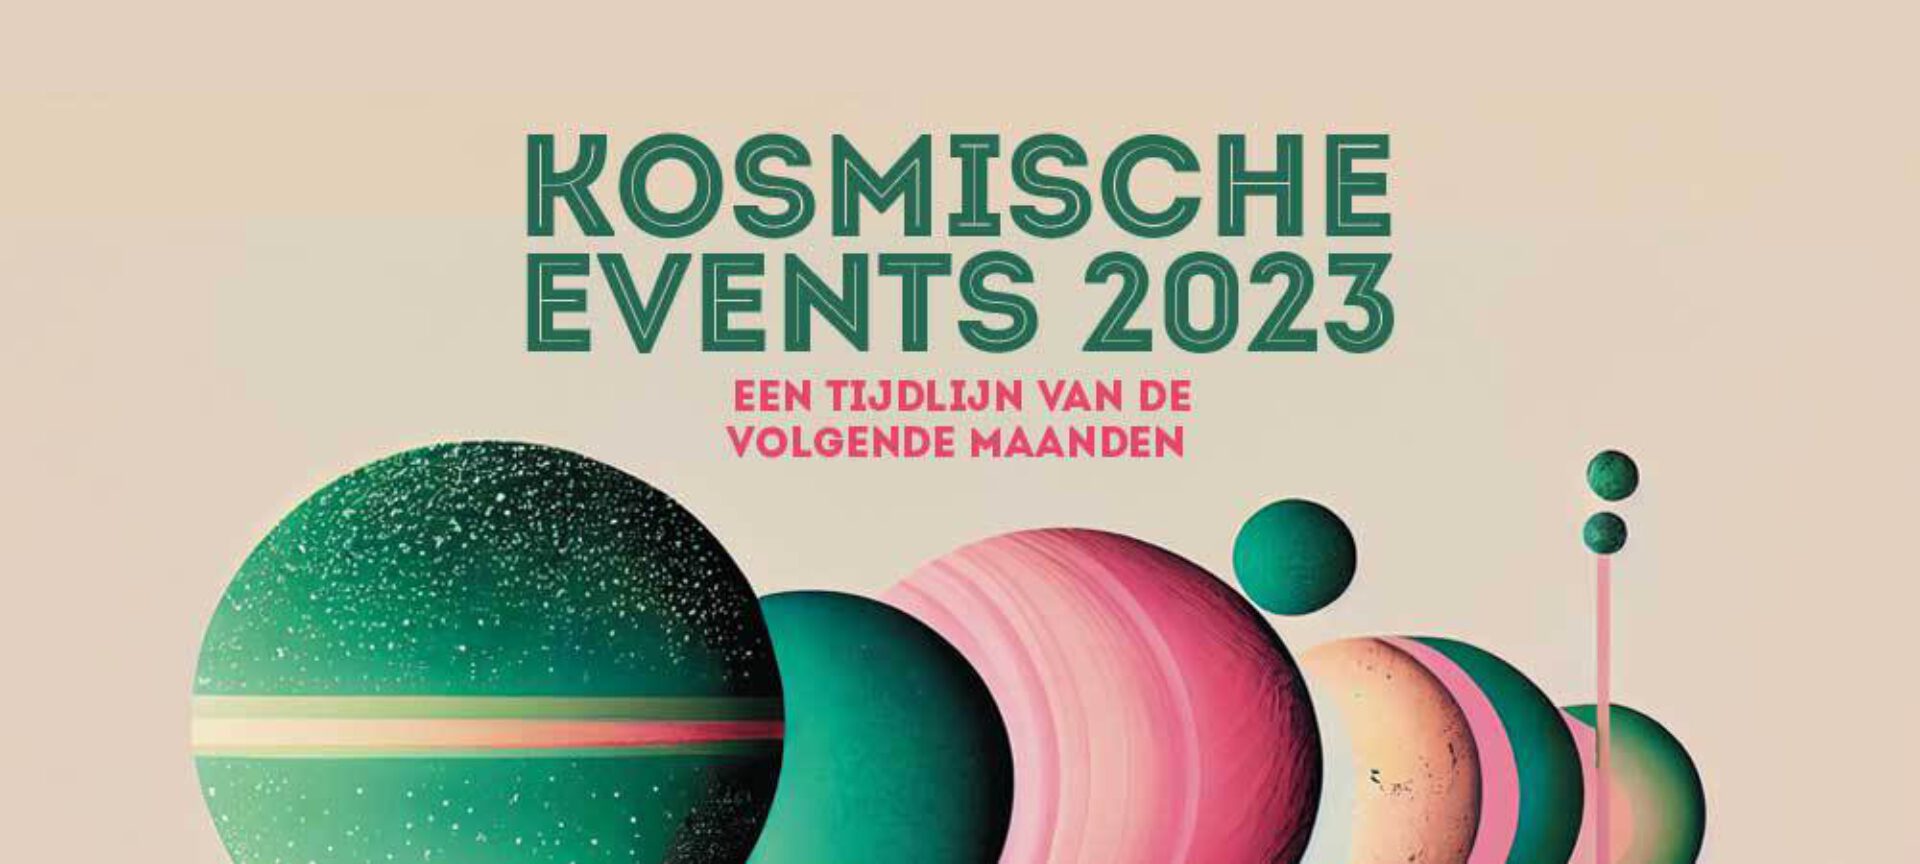 Kosmische Events 2023:  Een tijdlijn van de volgende maanden